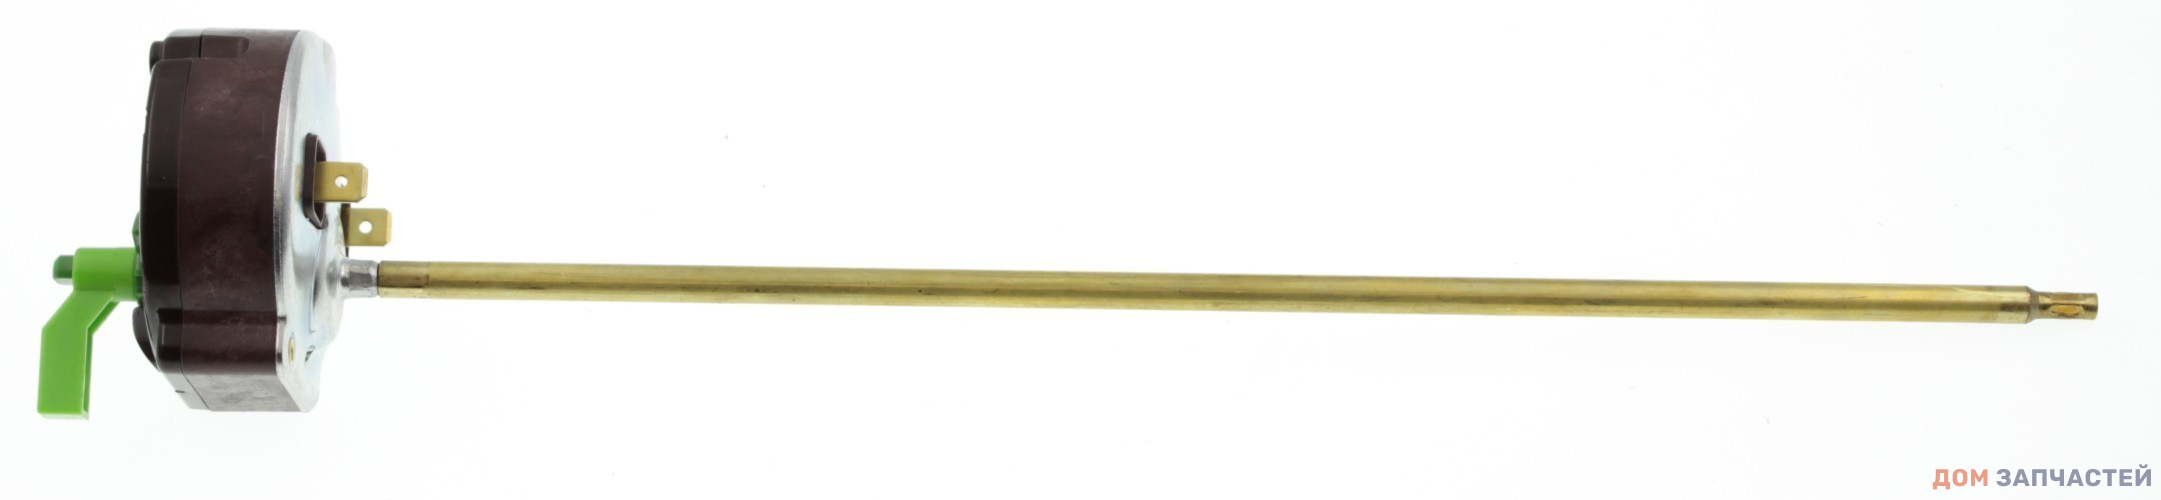 Термостат стержневой с ручкой регулировки для водонагревателей Thermex RTS 3  R 16А 300 70/83